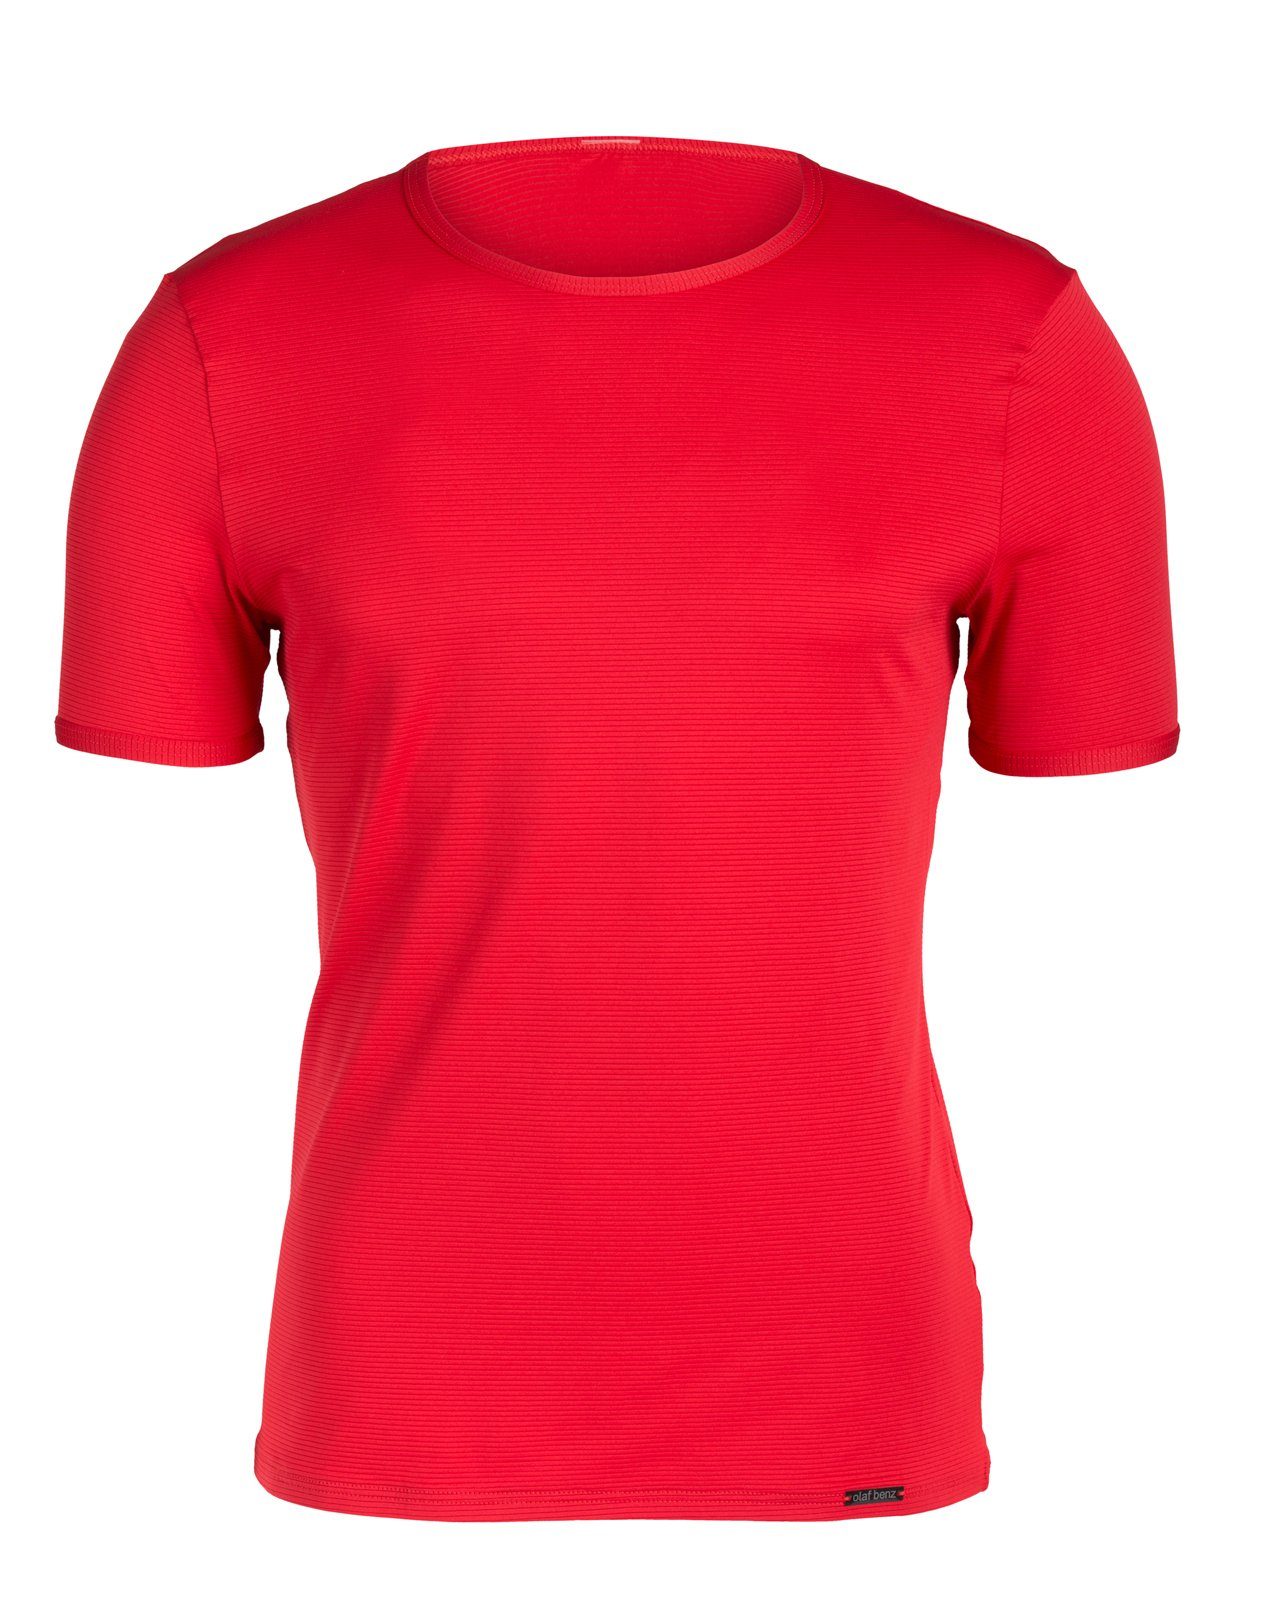 Olaf Benz Unterziehshirt T-Shirt Doppelpack RED 1201 (Packung, 2er-Pack) Rot